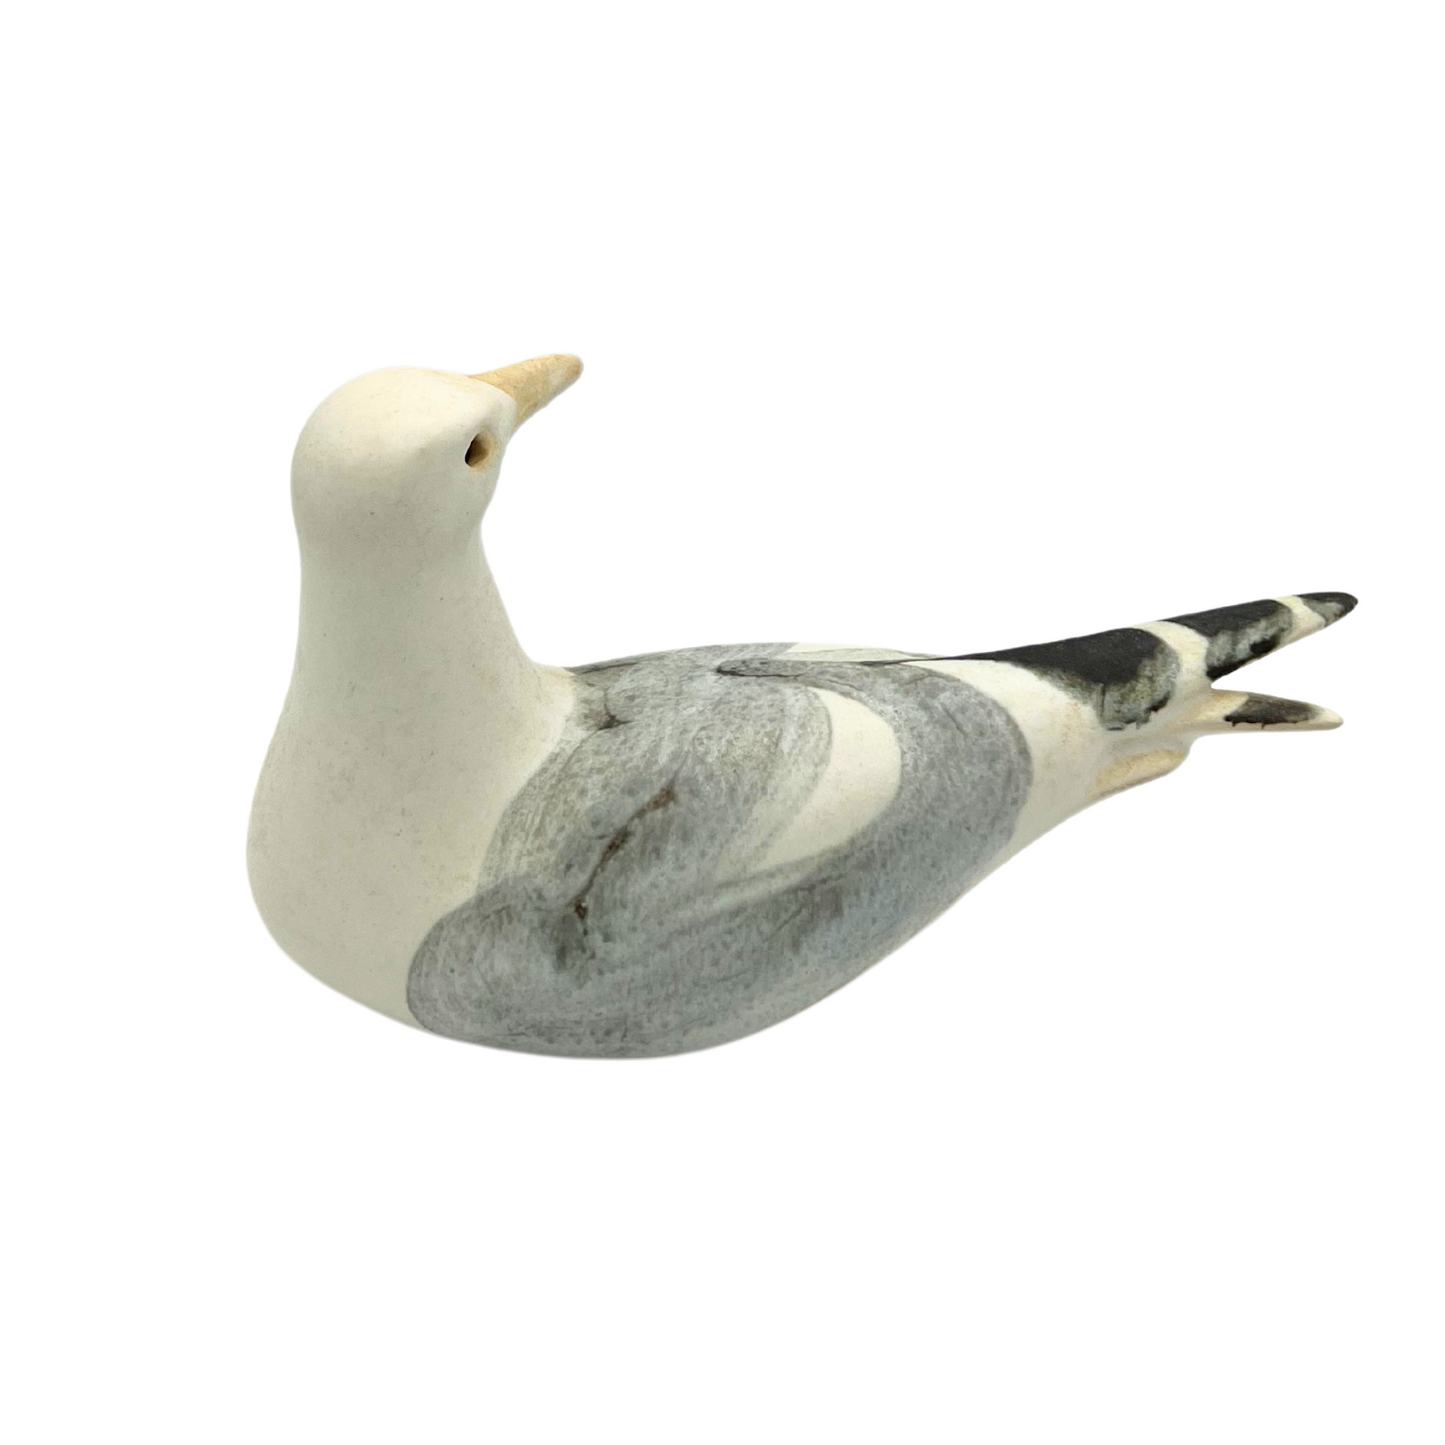 1982 ceramic seagull